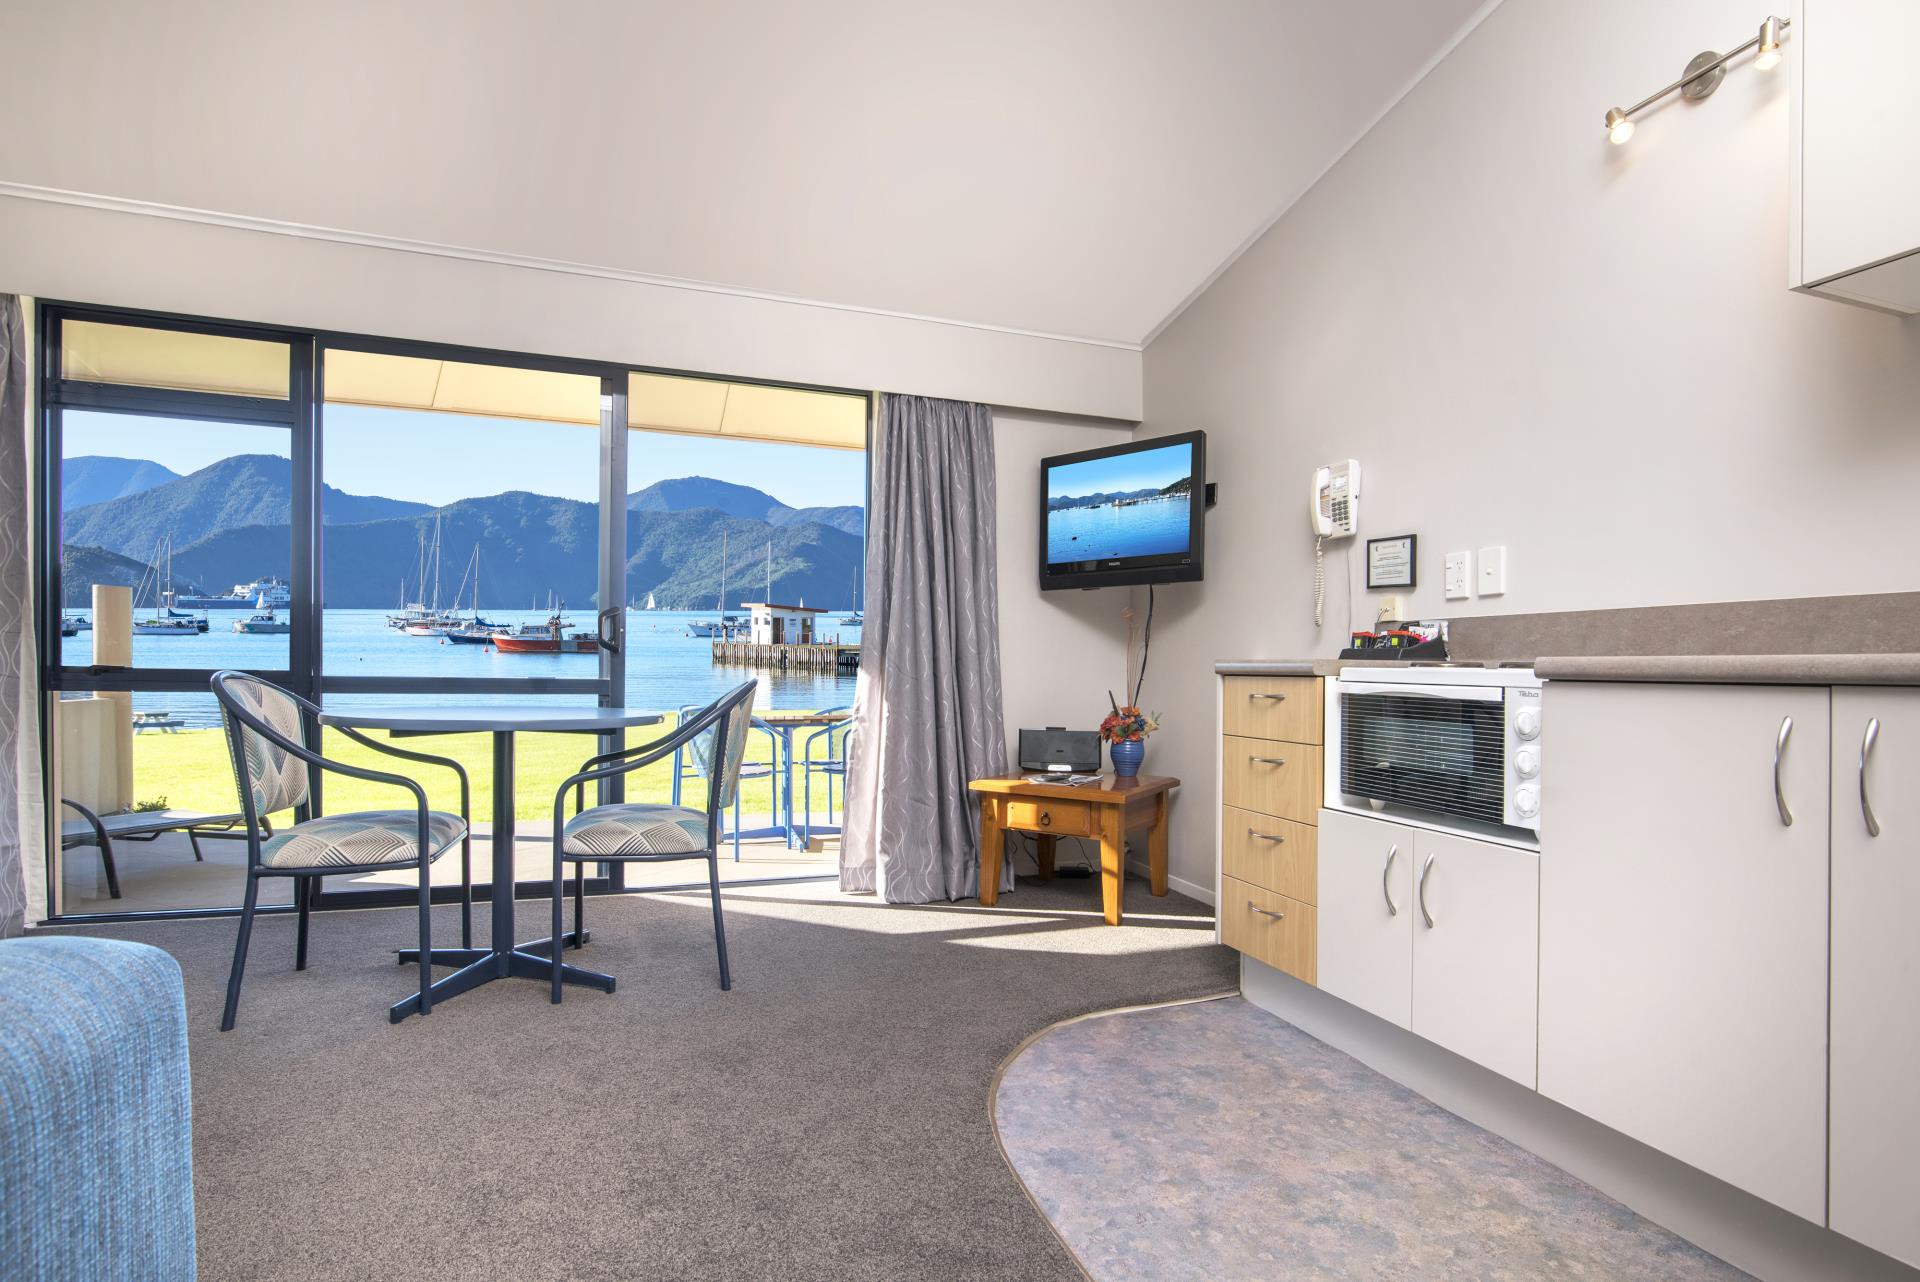 Ofreciendo alojamiento en Picton en Nueva Zelanda